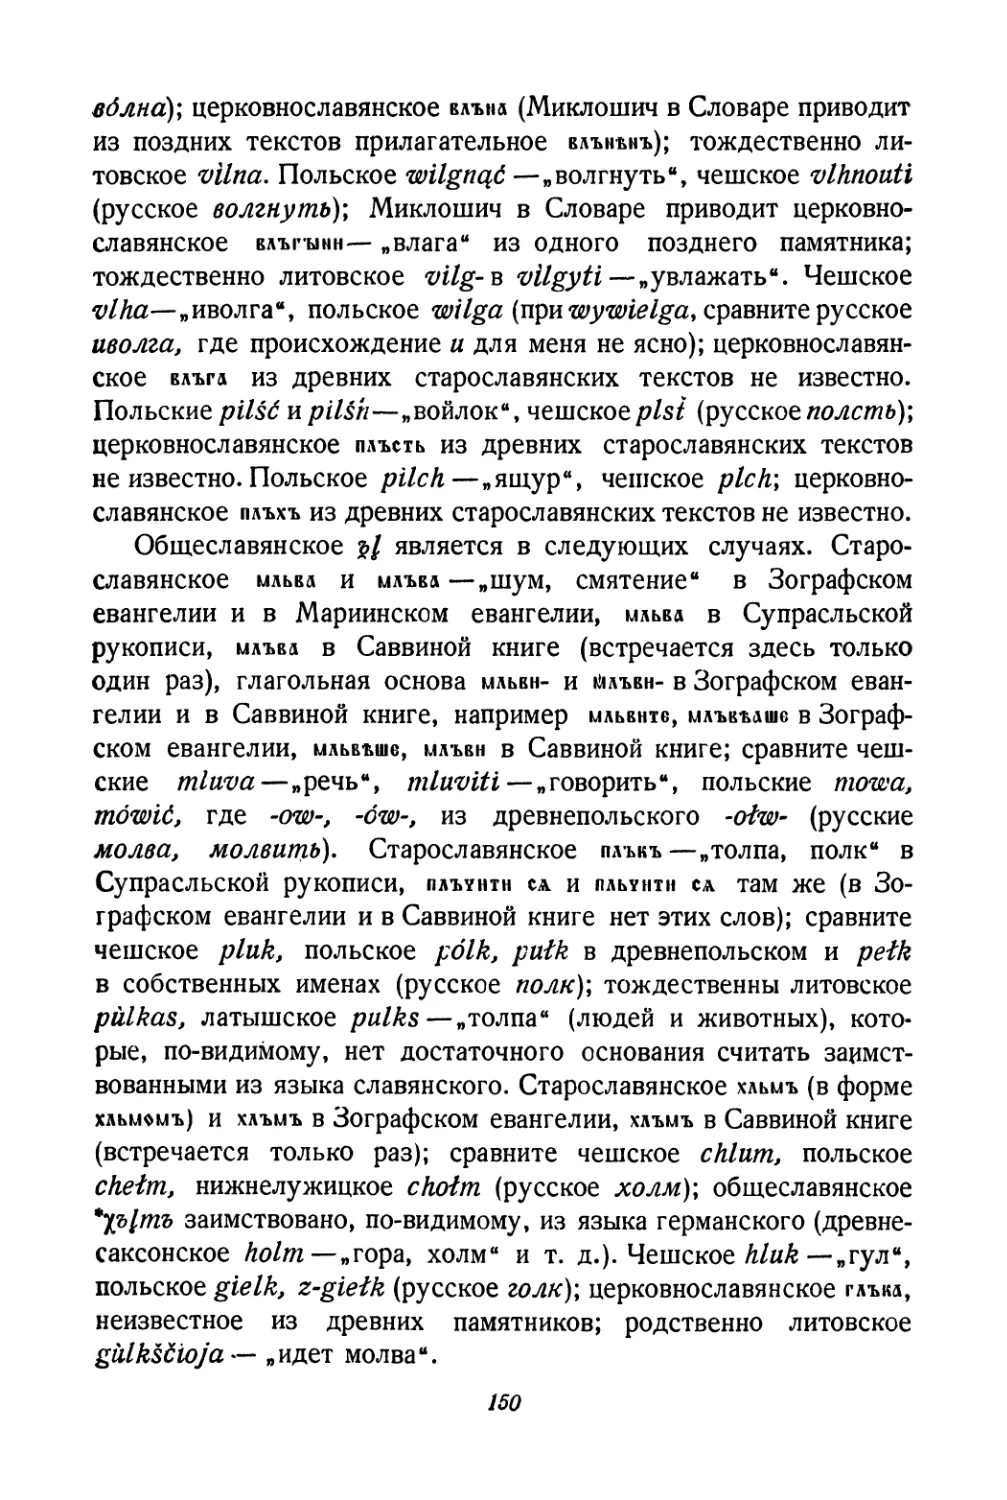 Примеры для общеславянских ъl после других согласных